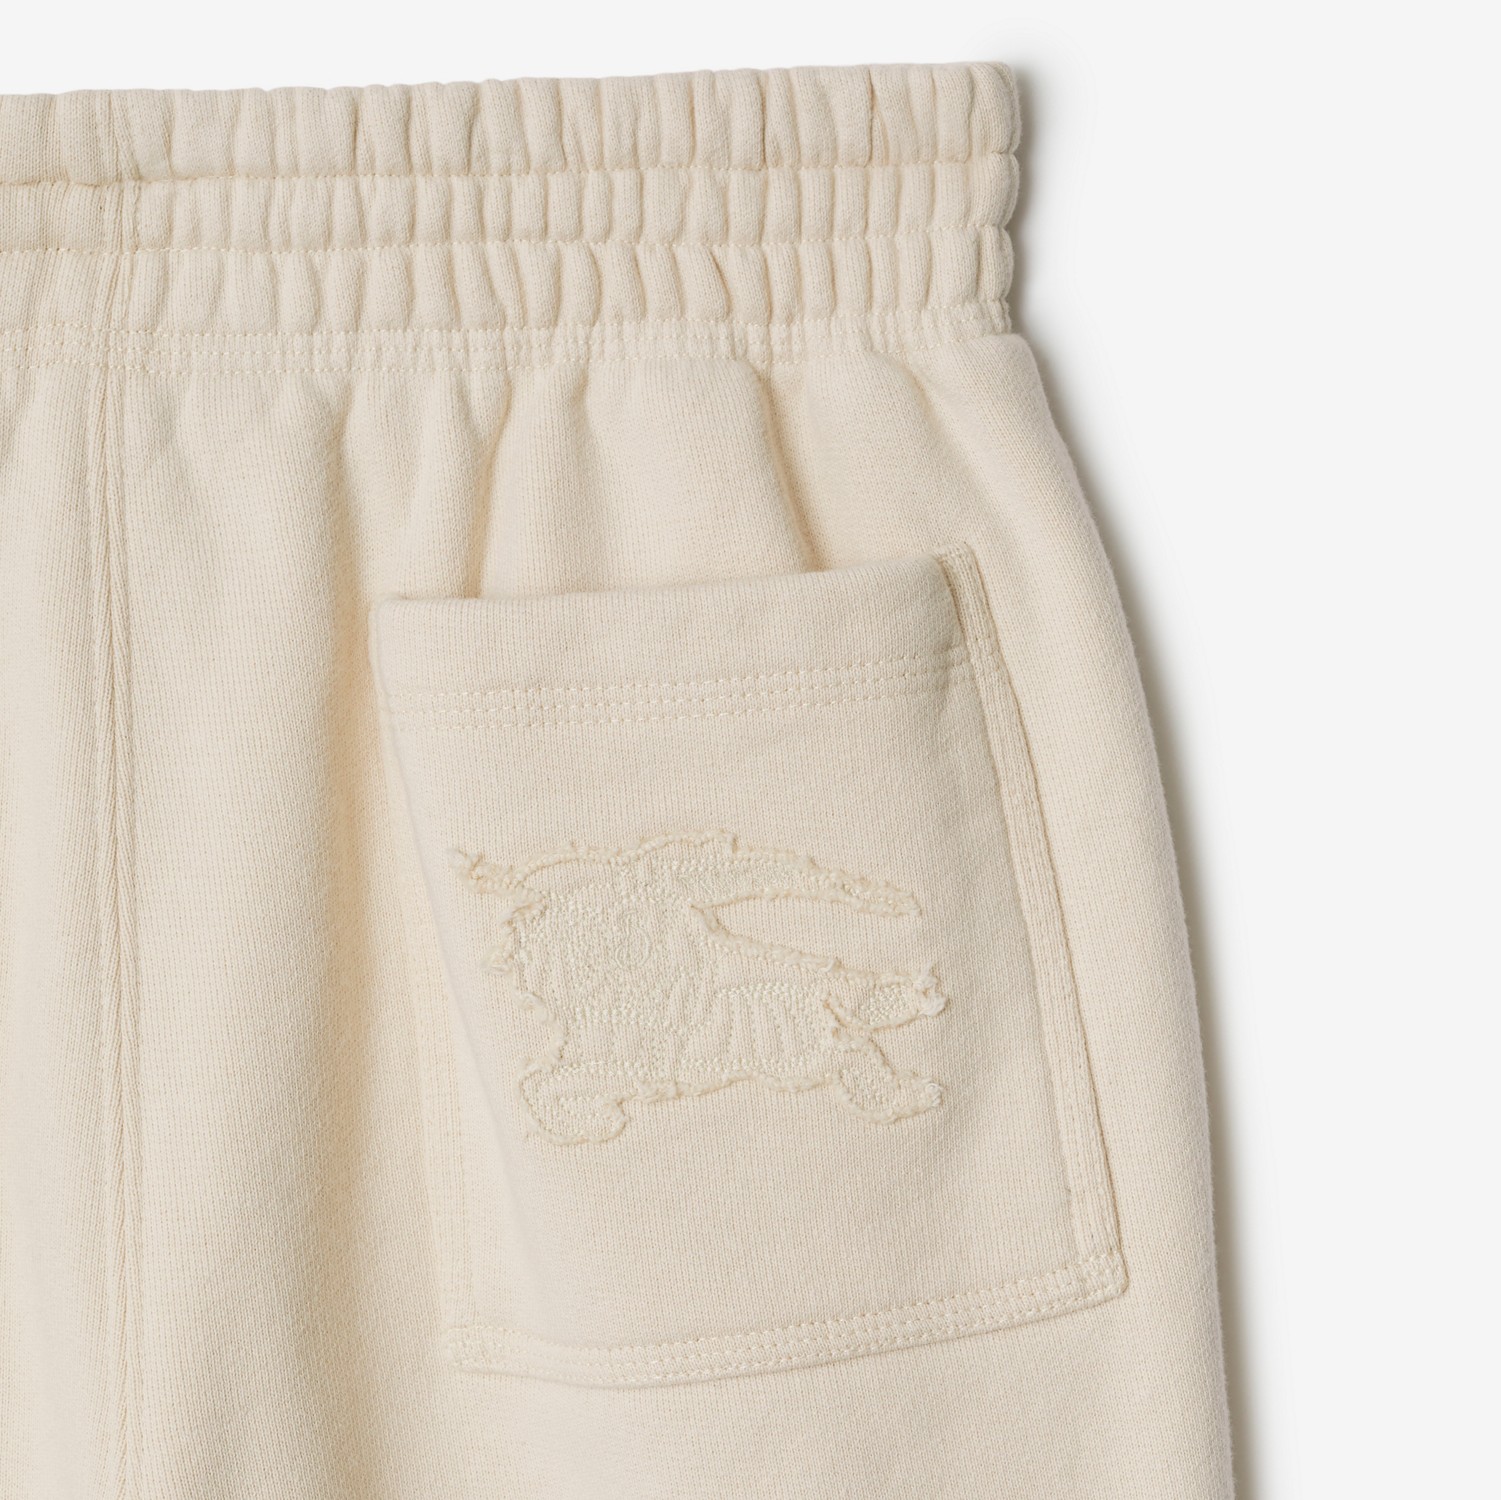 Pantalones deportivos en algodón